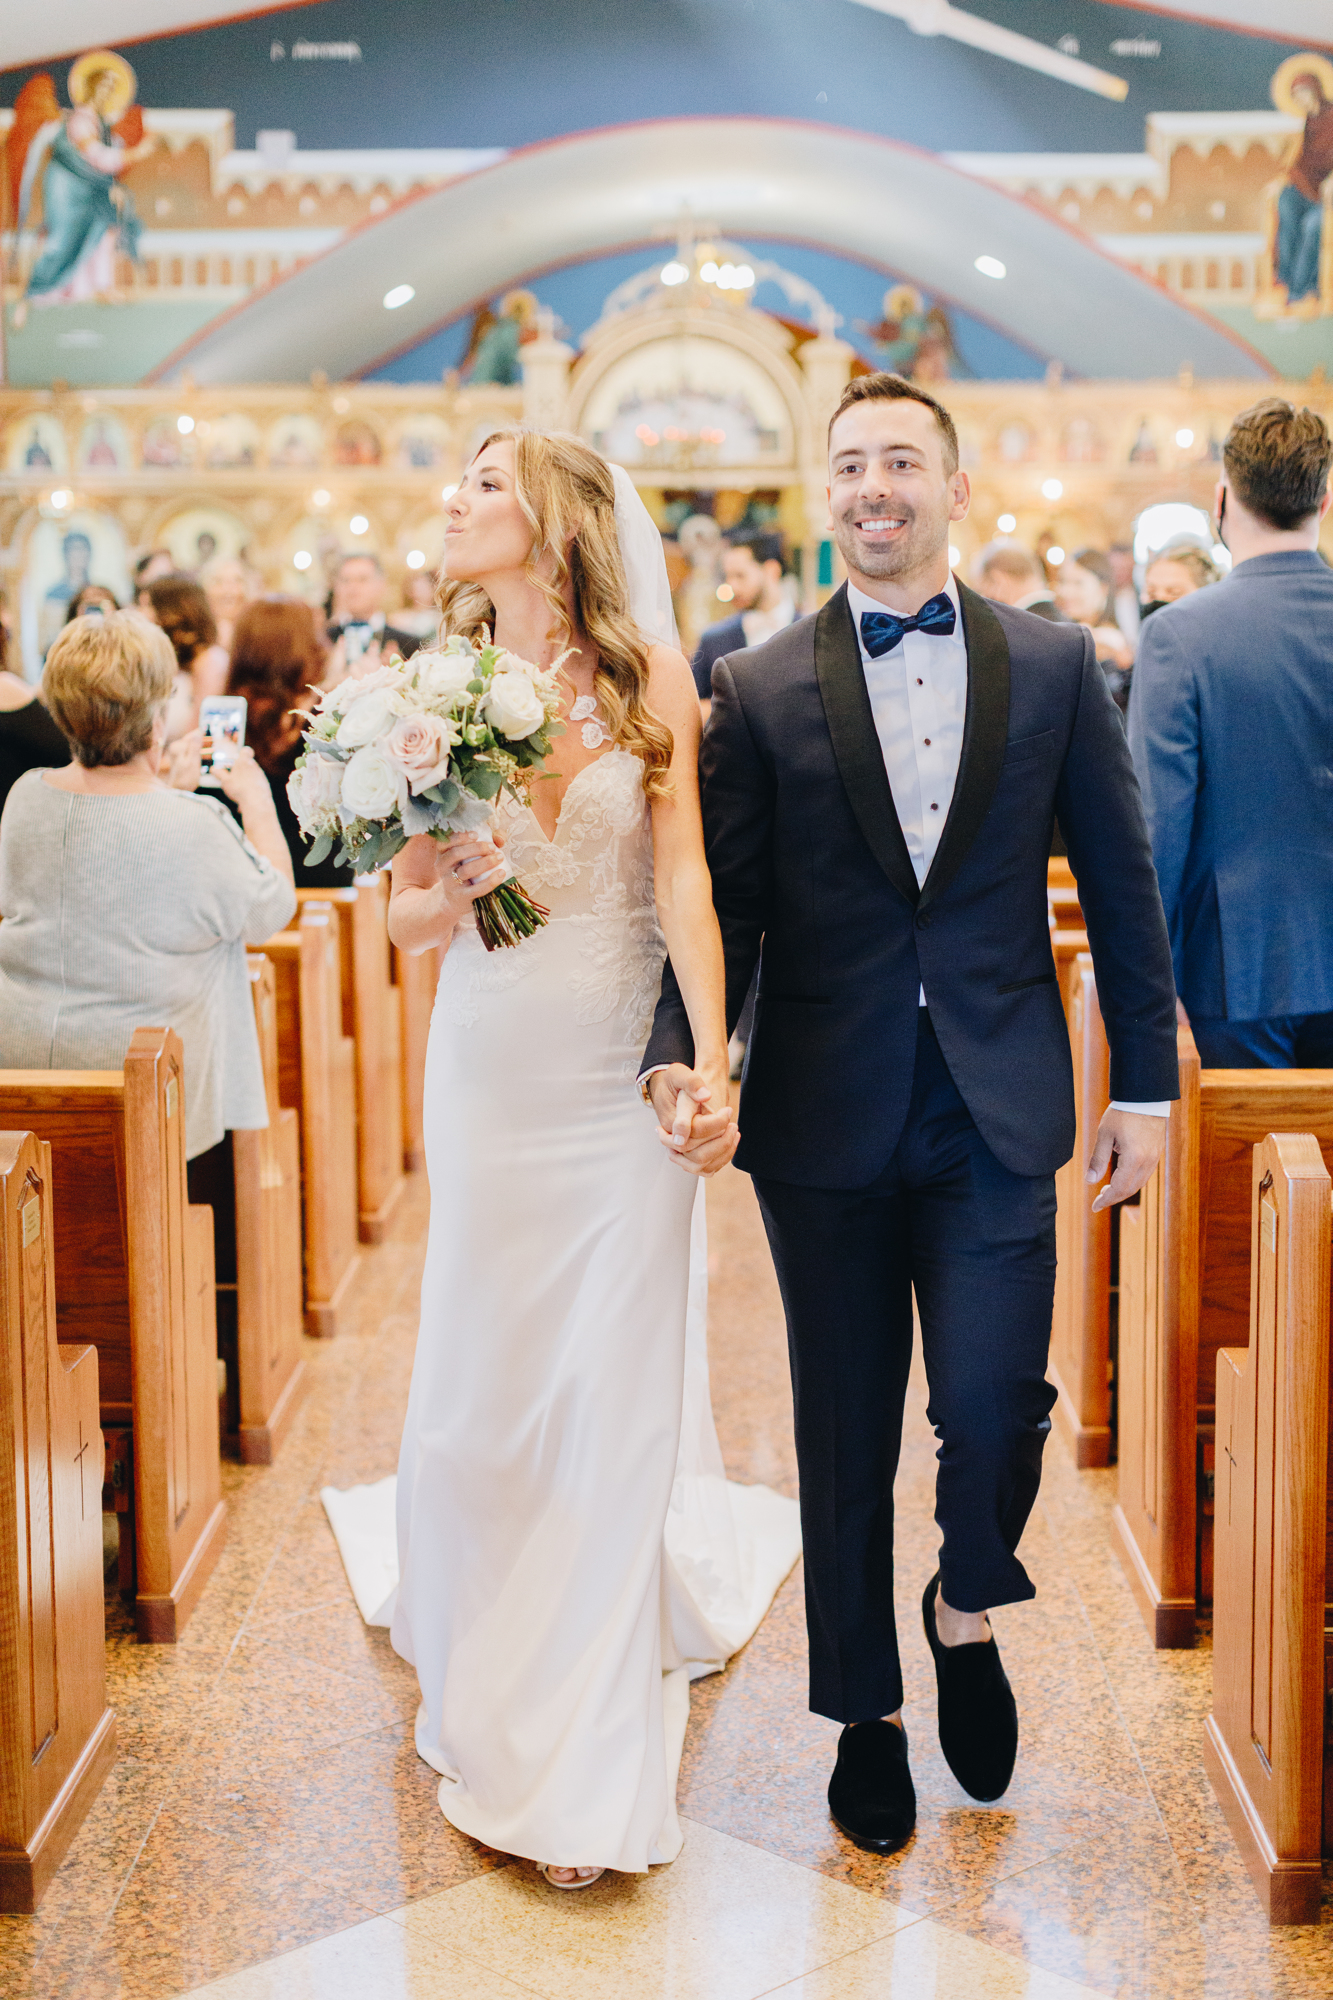 Wedding at St. Markella Greek Orthodox Church on Long Island